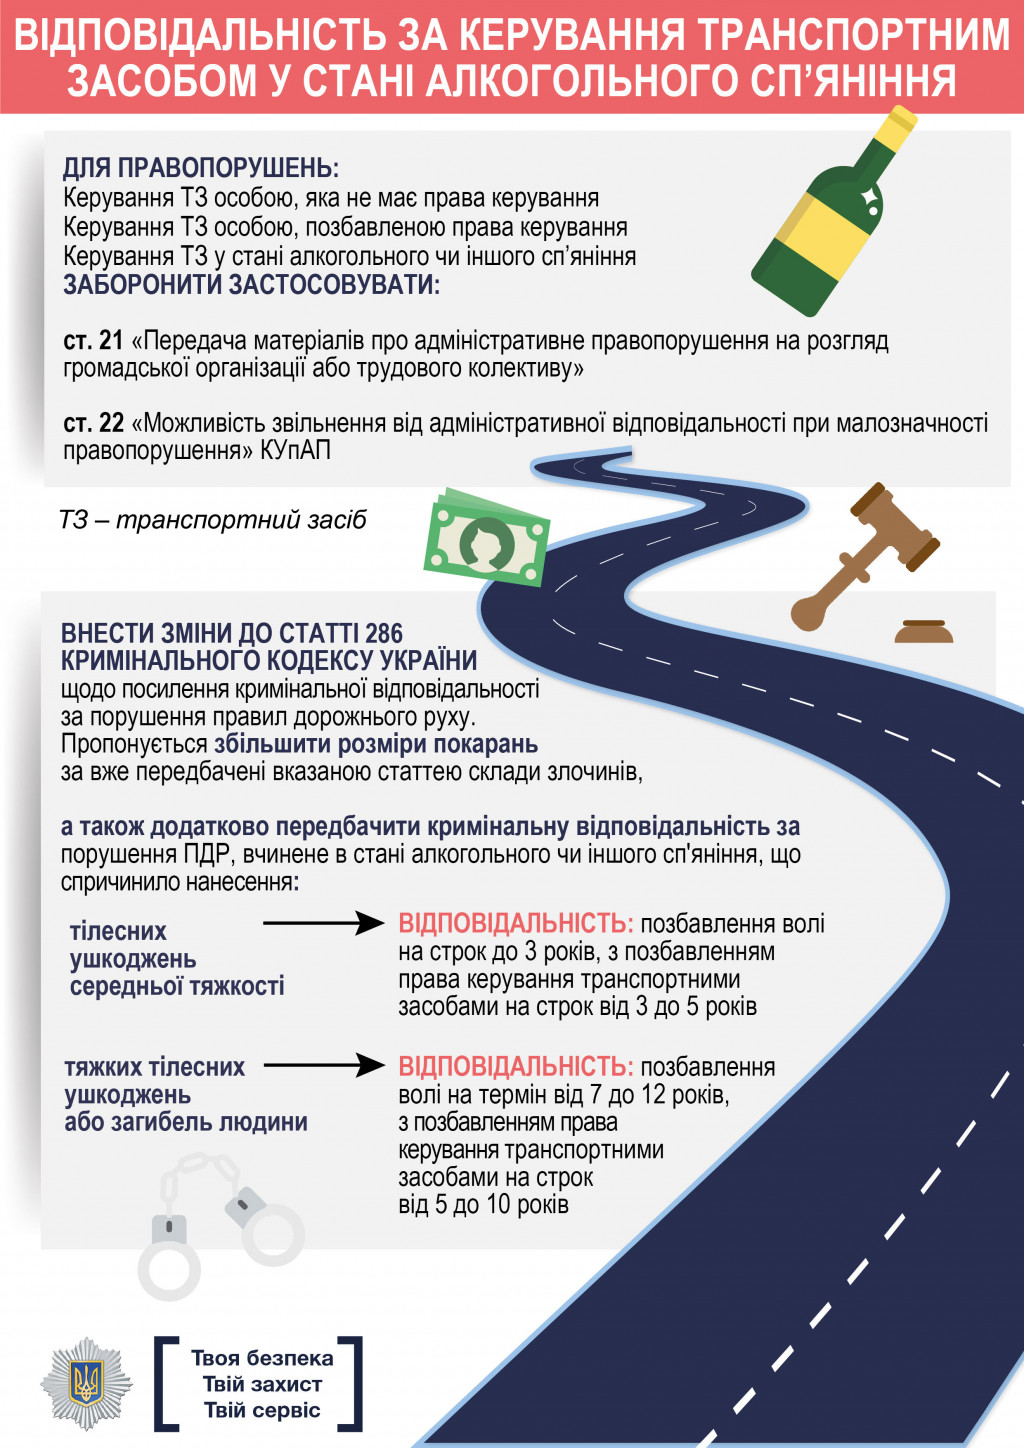 МВД пояснило тонкости новых ПДД (инфографика)